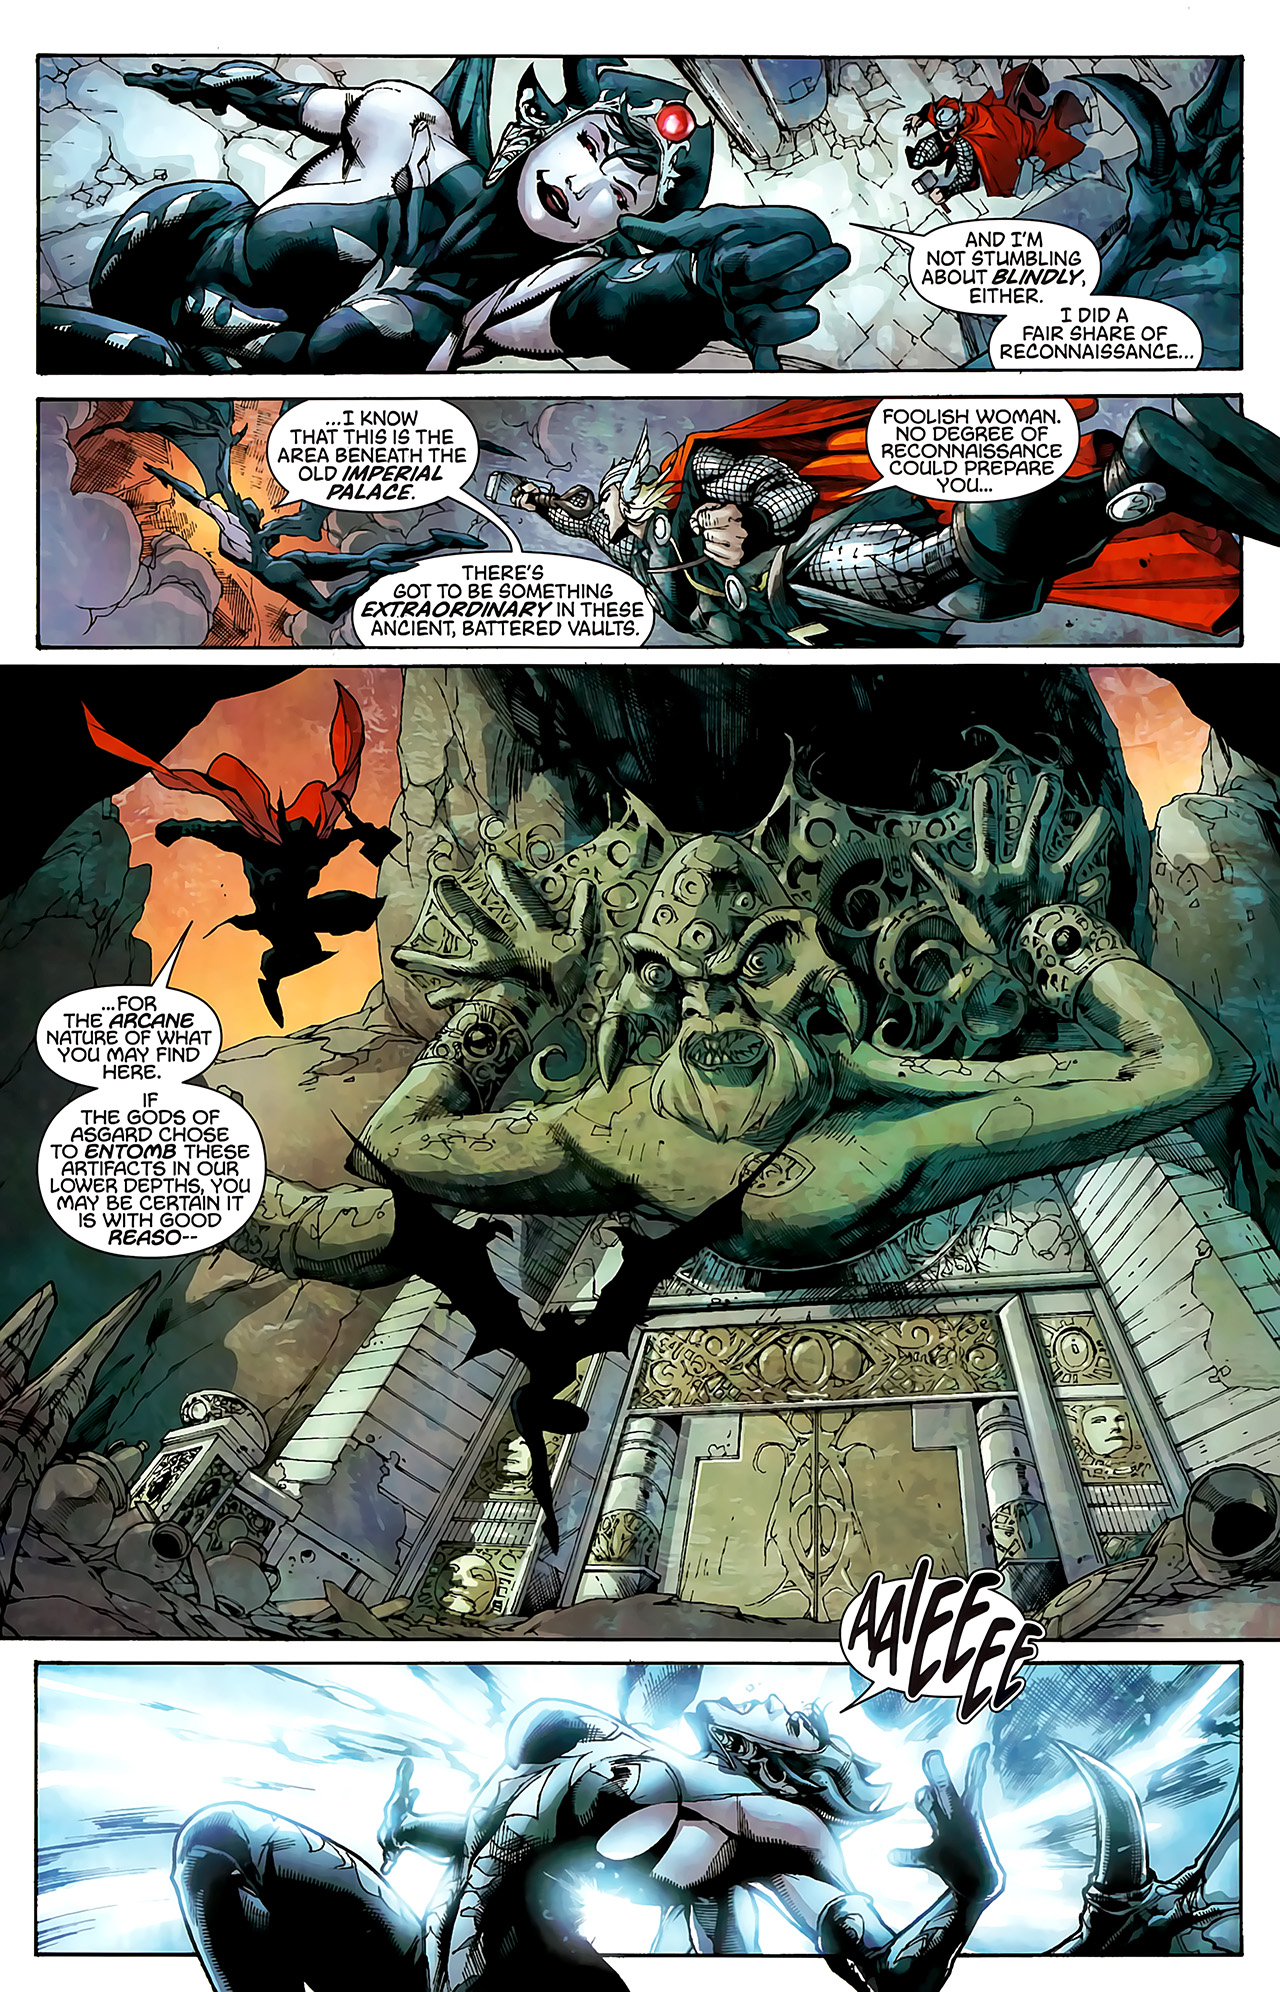 Thor The Deviants Saga Issue 1 | Read Thor The Deviants Saga Issue 